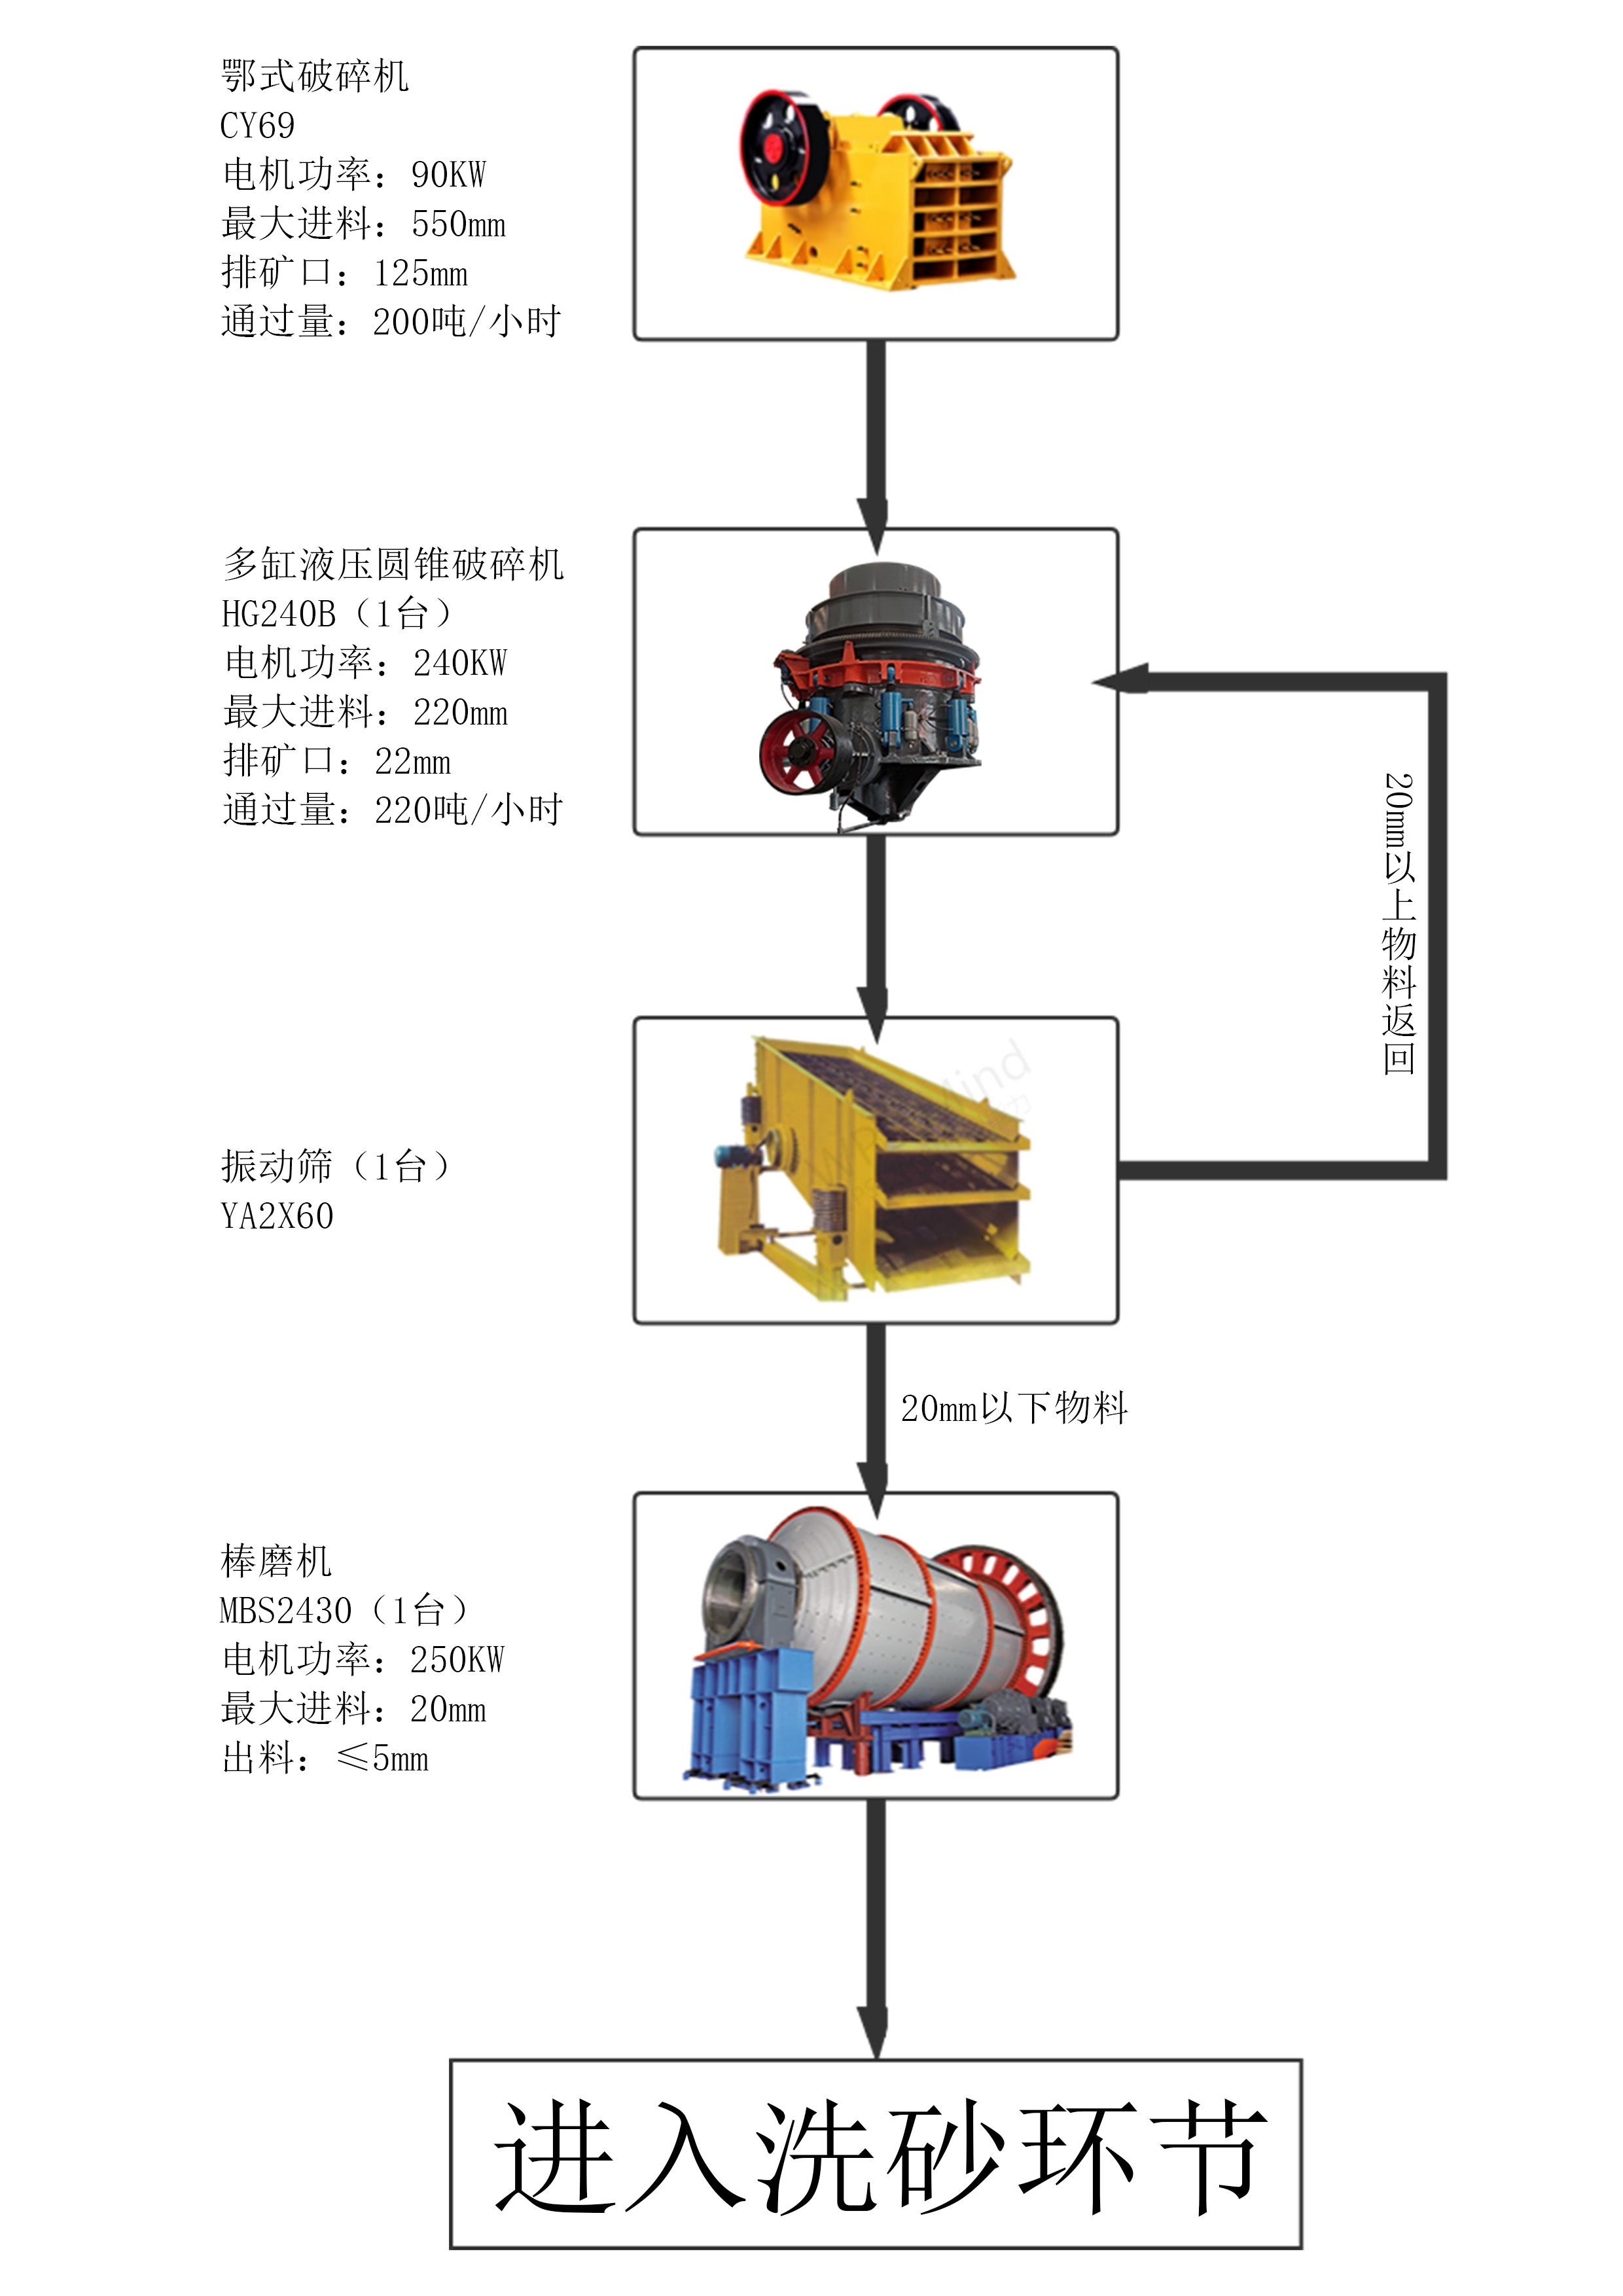 风化岩制砂-150吨时产精品机制砂成套生产线(图1)